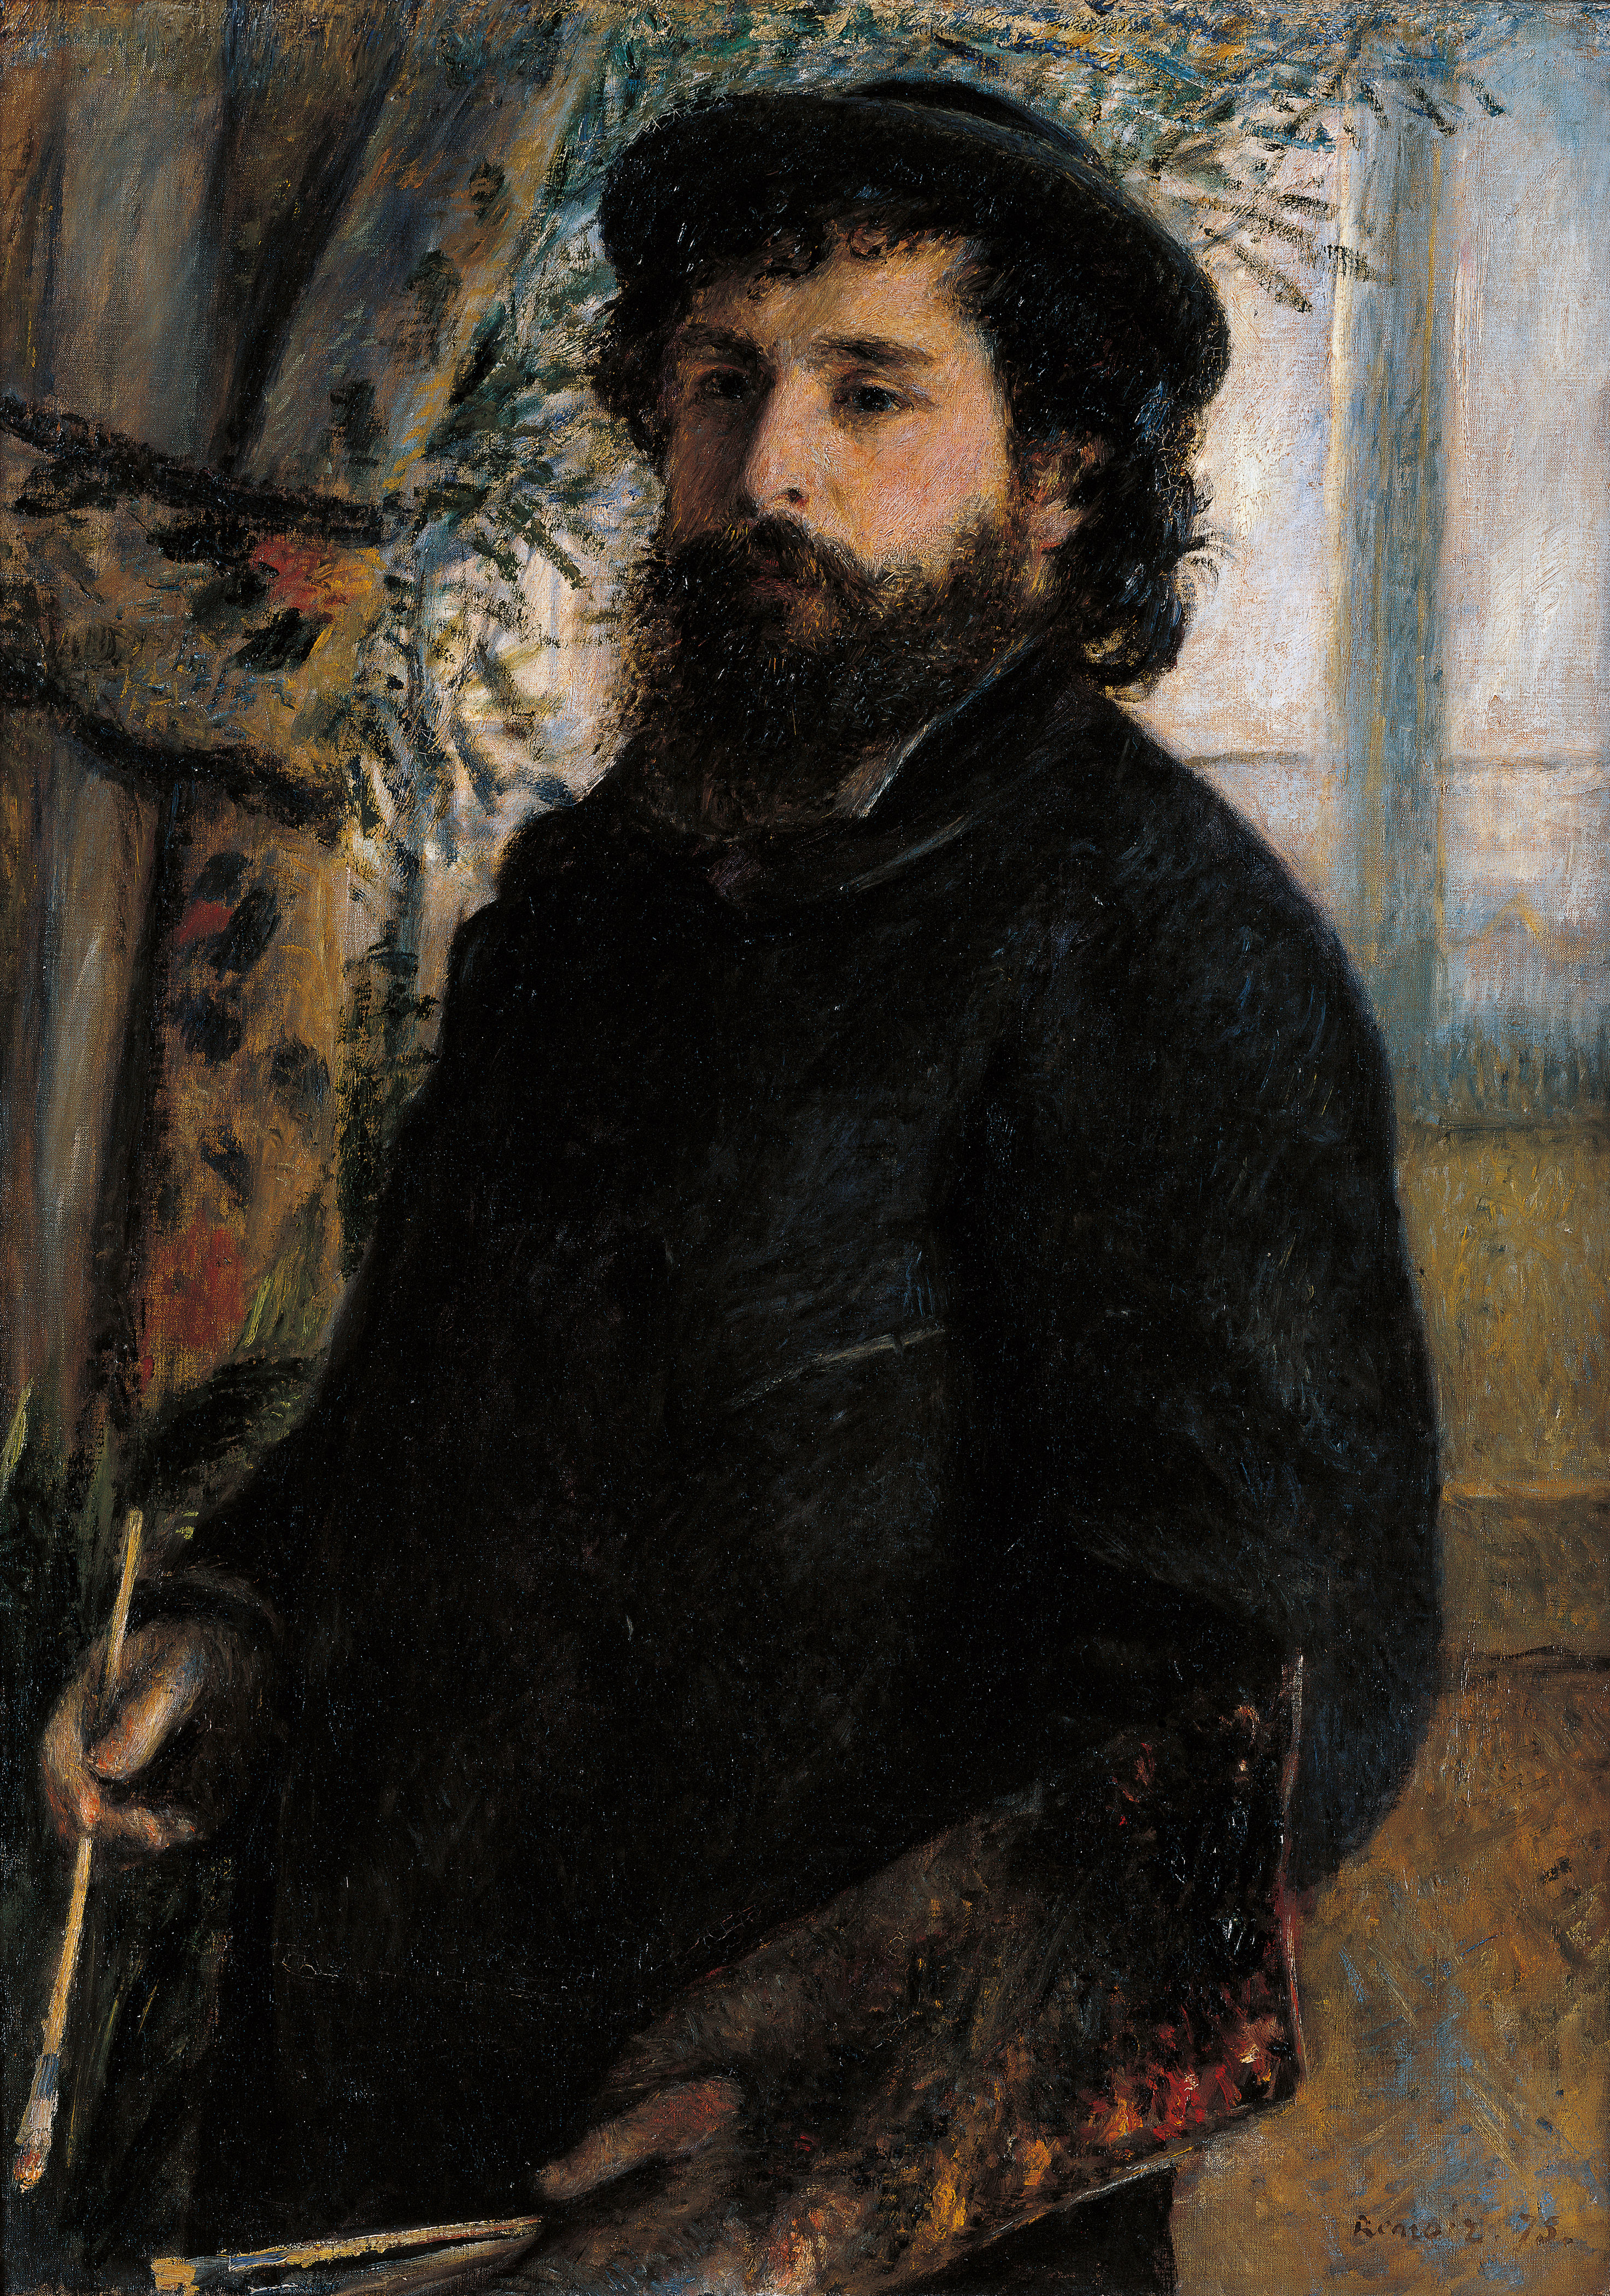 Portrait of Claude Monet, by Pierre-Auguste Renoir, 1875.